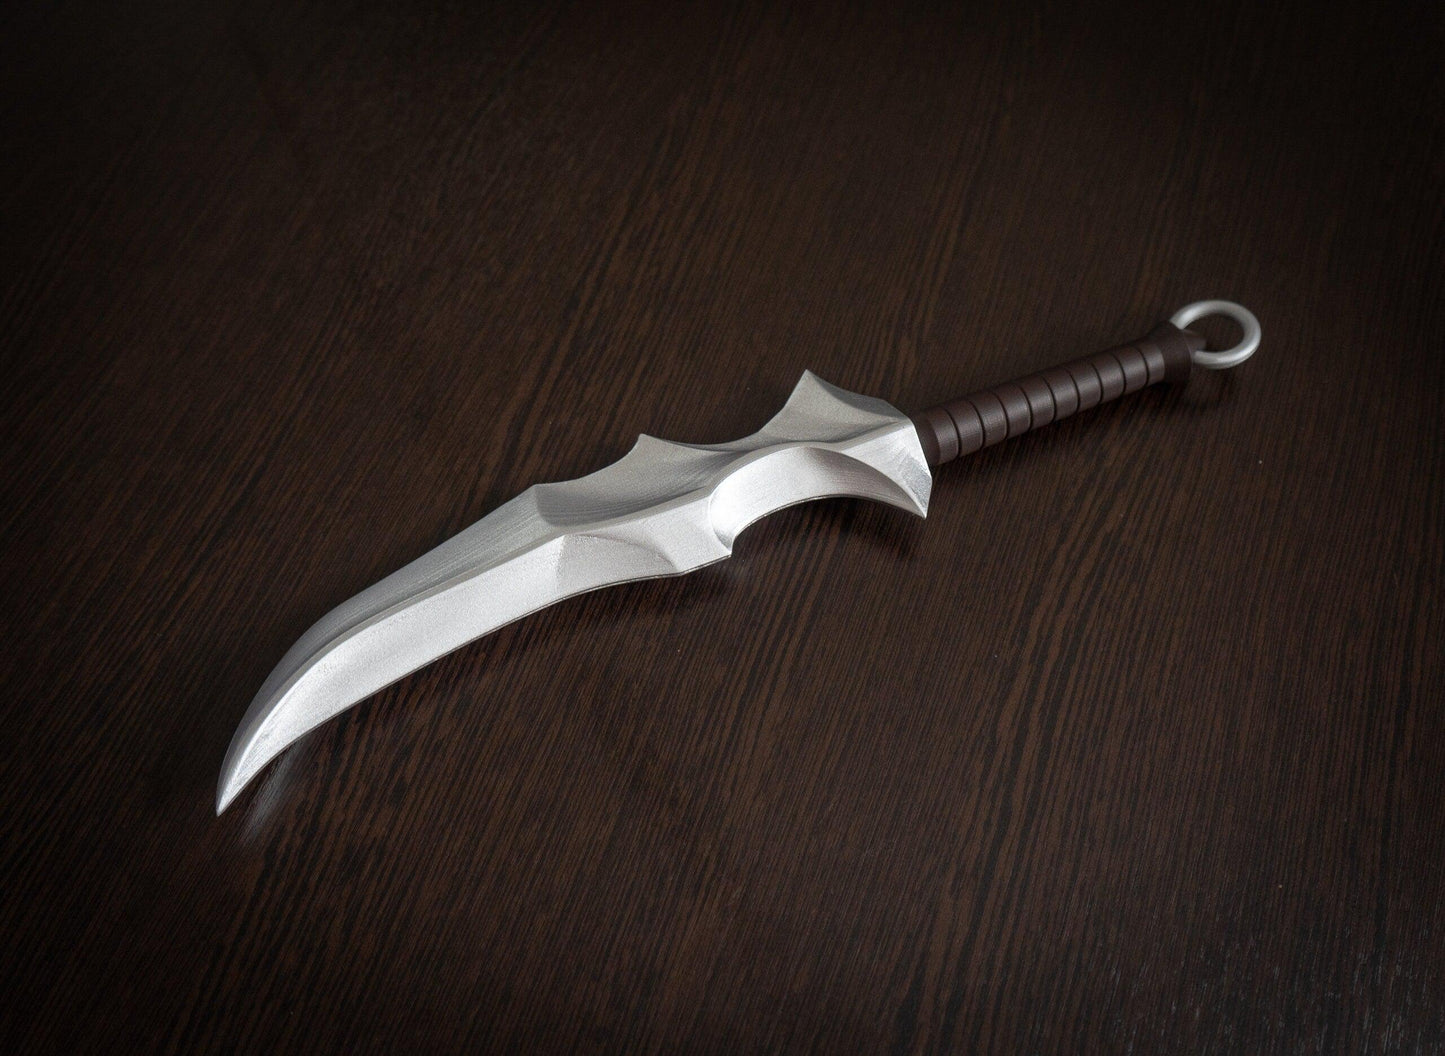 Vampire Blade cosplay prop - 3DPrintProps